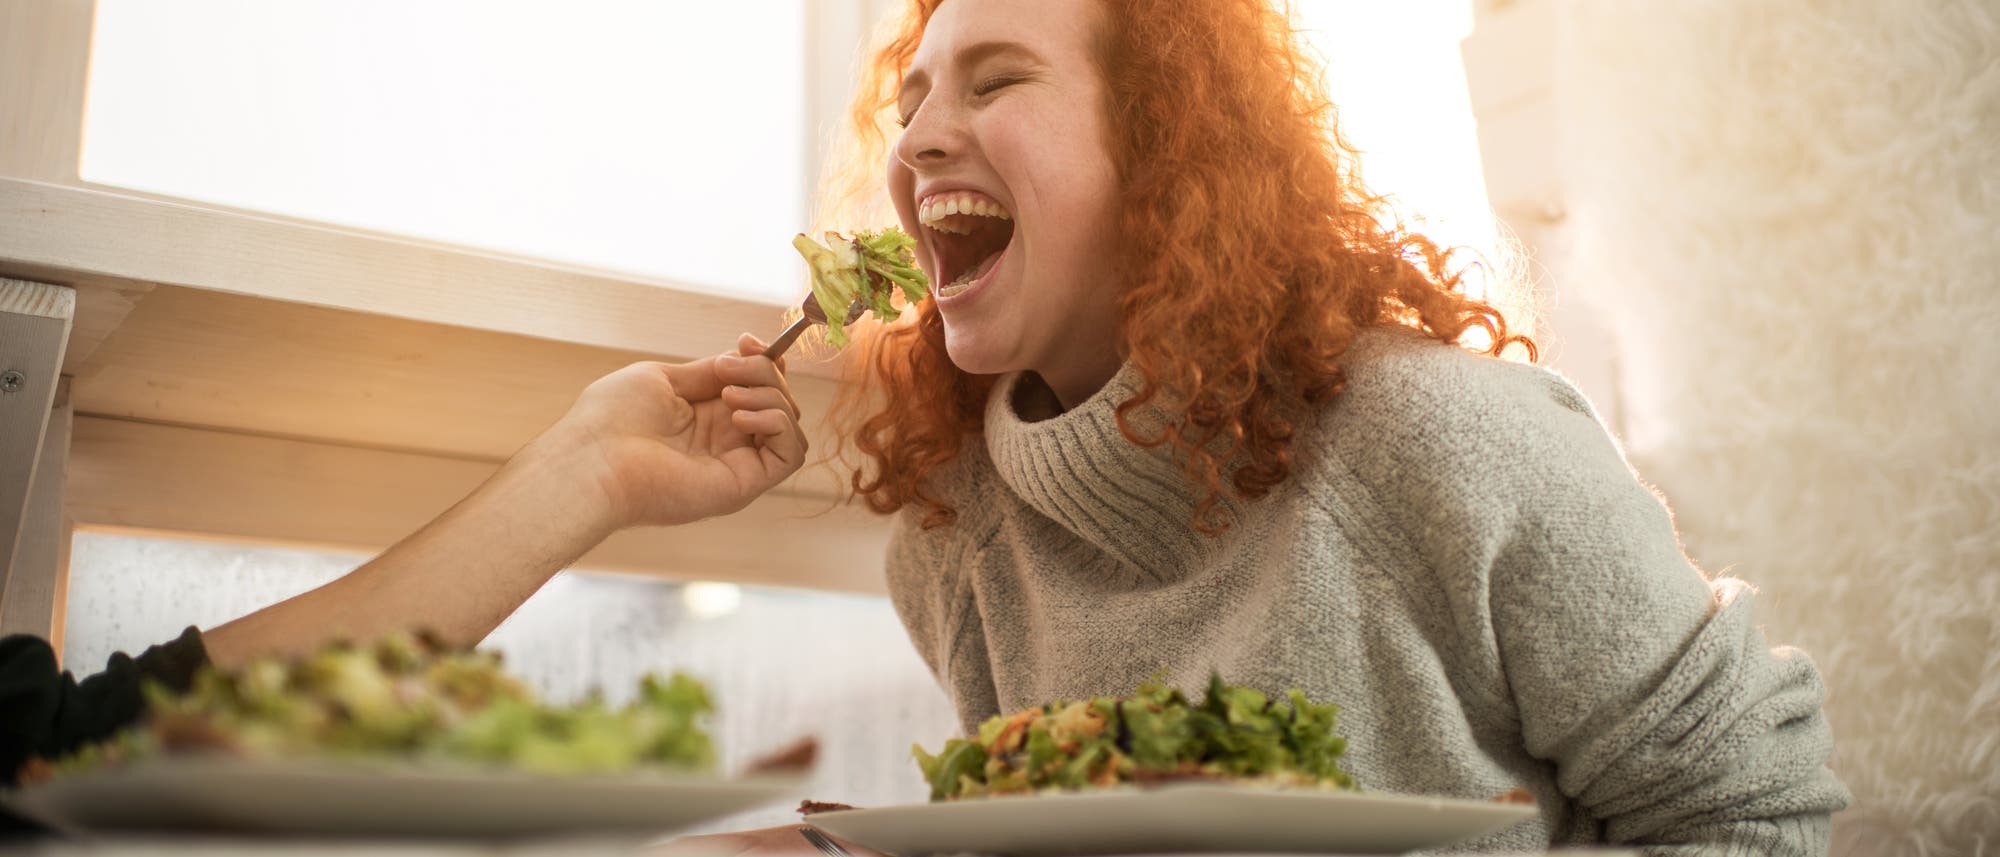 Eine jungen Frau mit roten Haaren wird von einem Mann mit Salat gefüttert. Sie lacht.